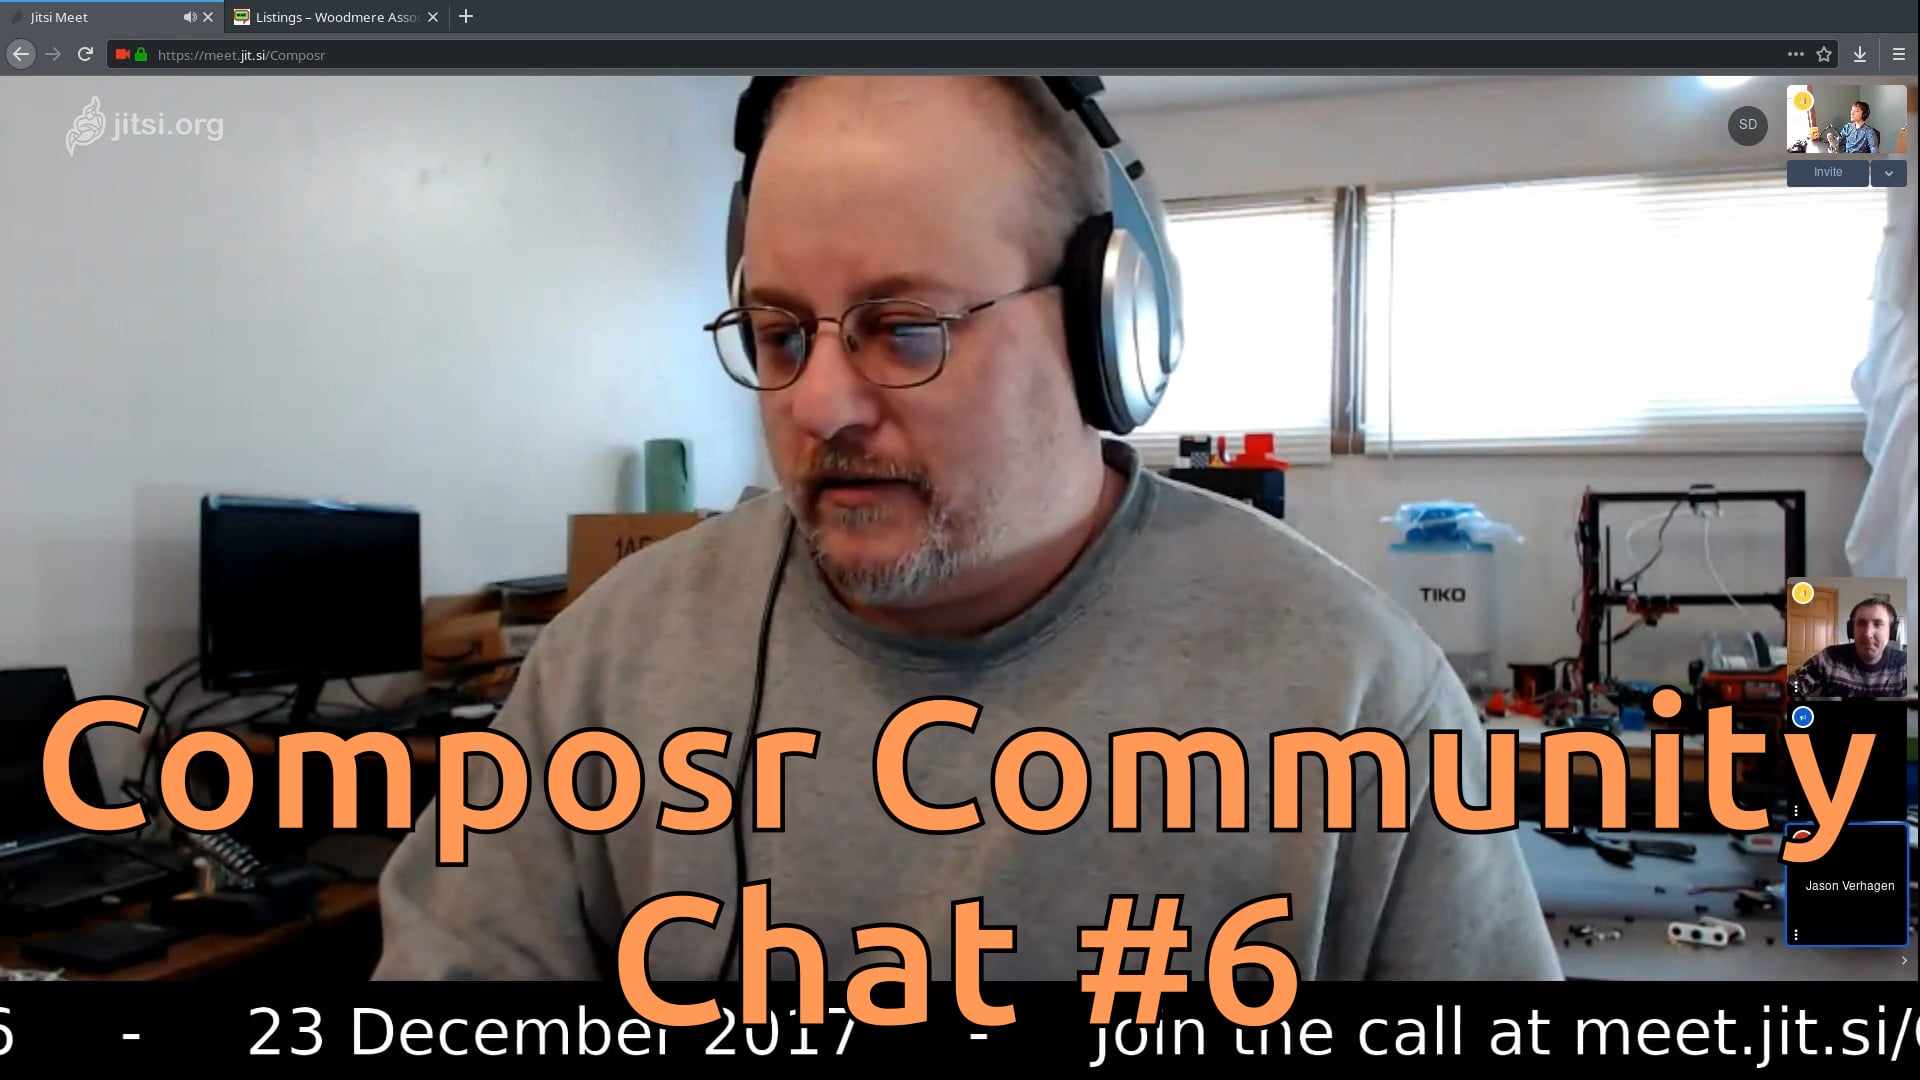 Composr Community Chat #6